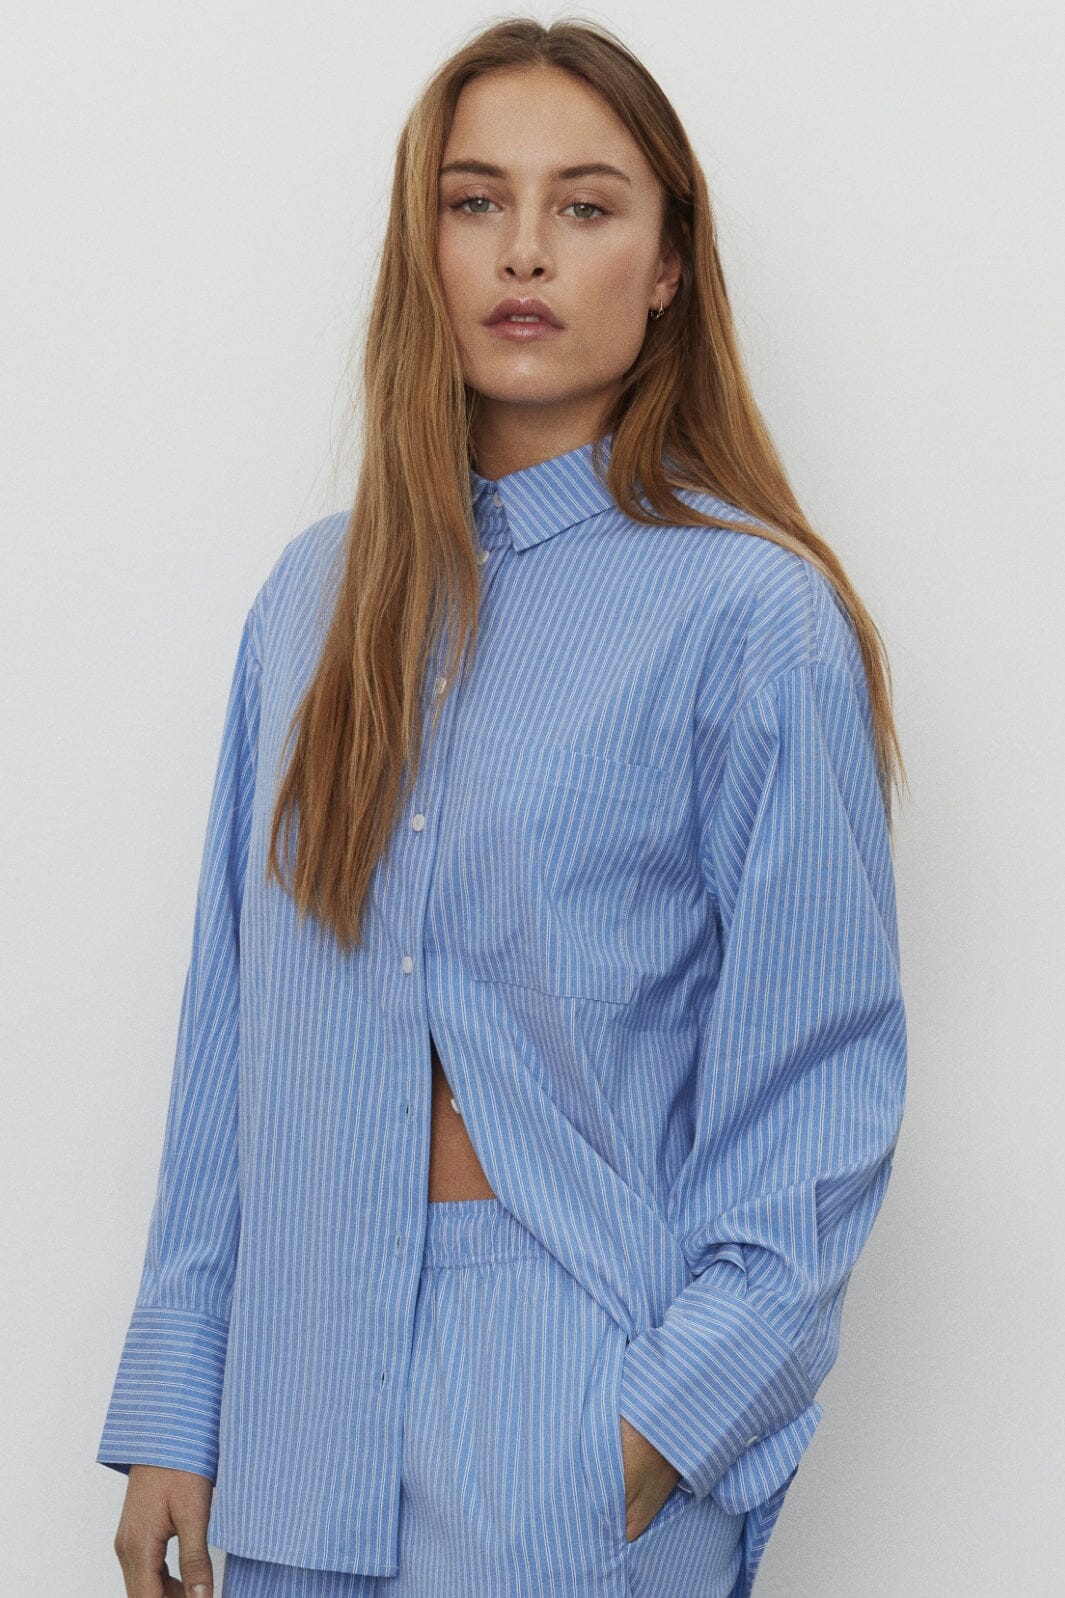 Sofie Schnoor - S241470 Shirt - Blue Striped Skjorter 